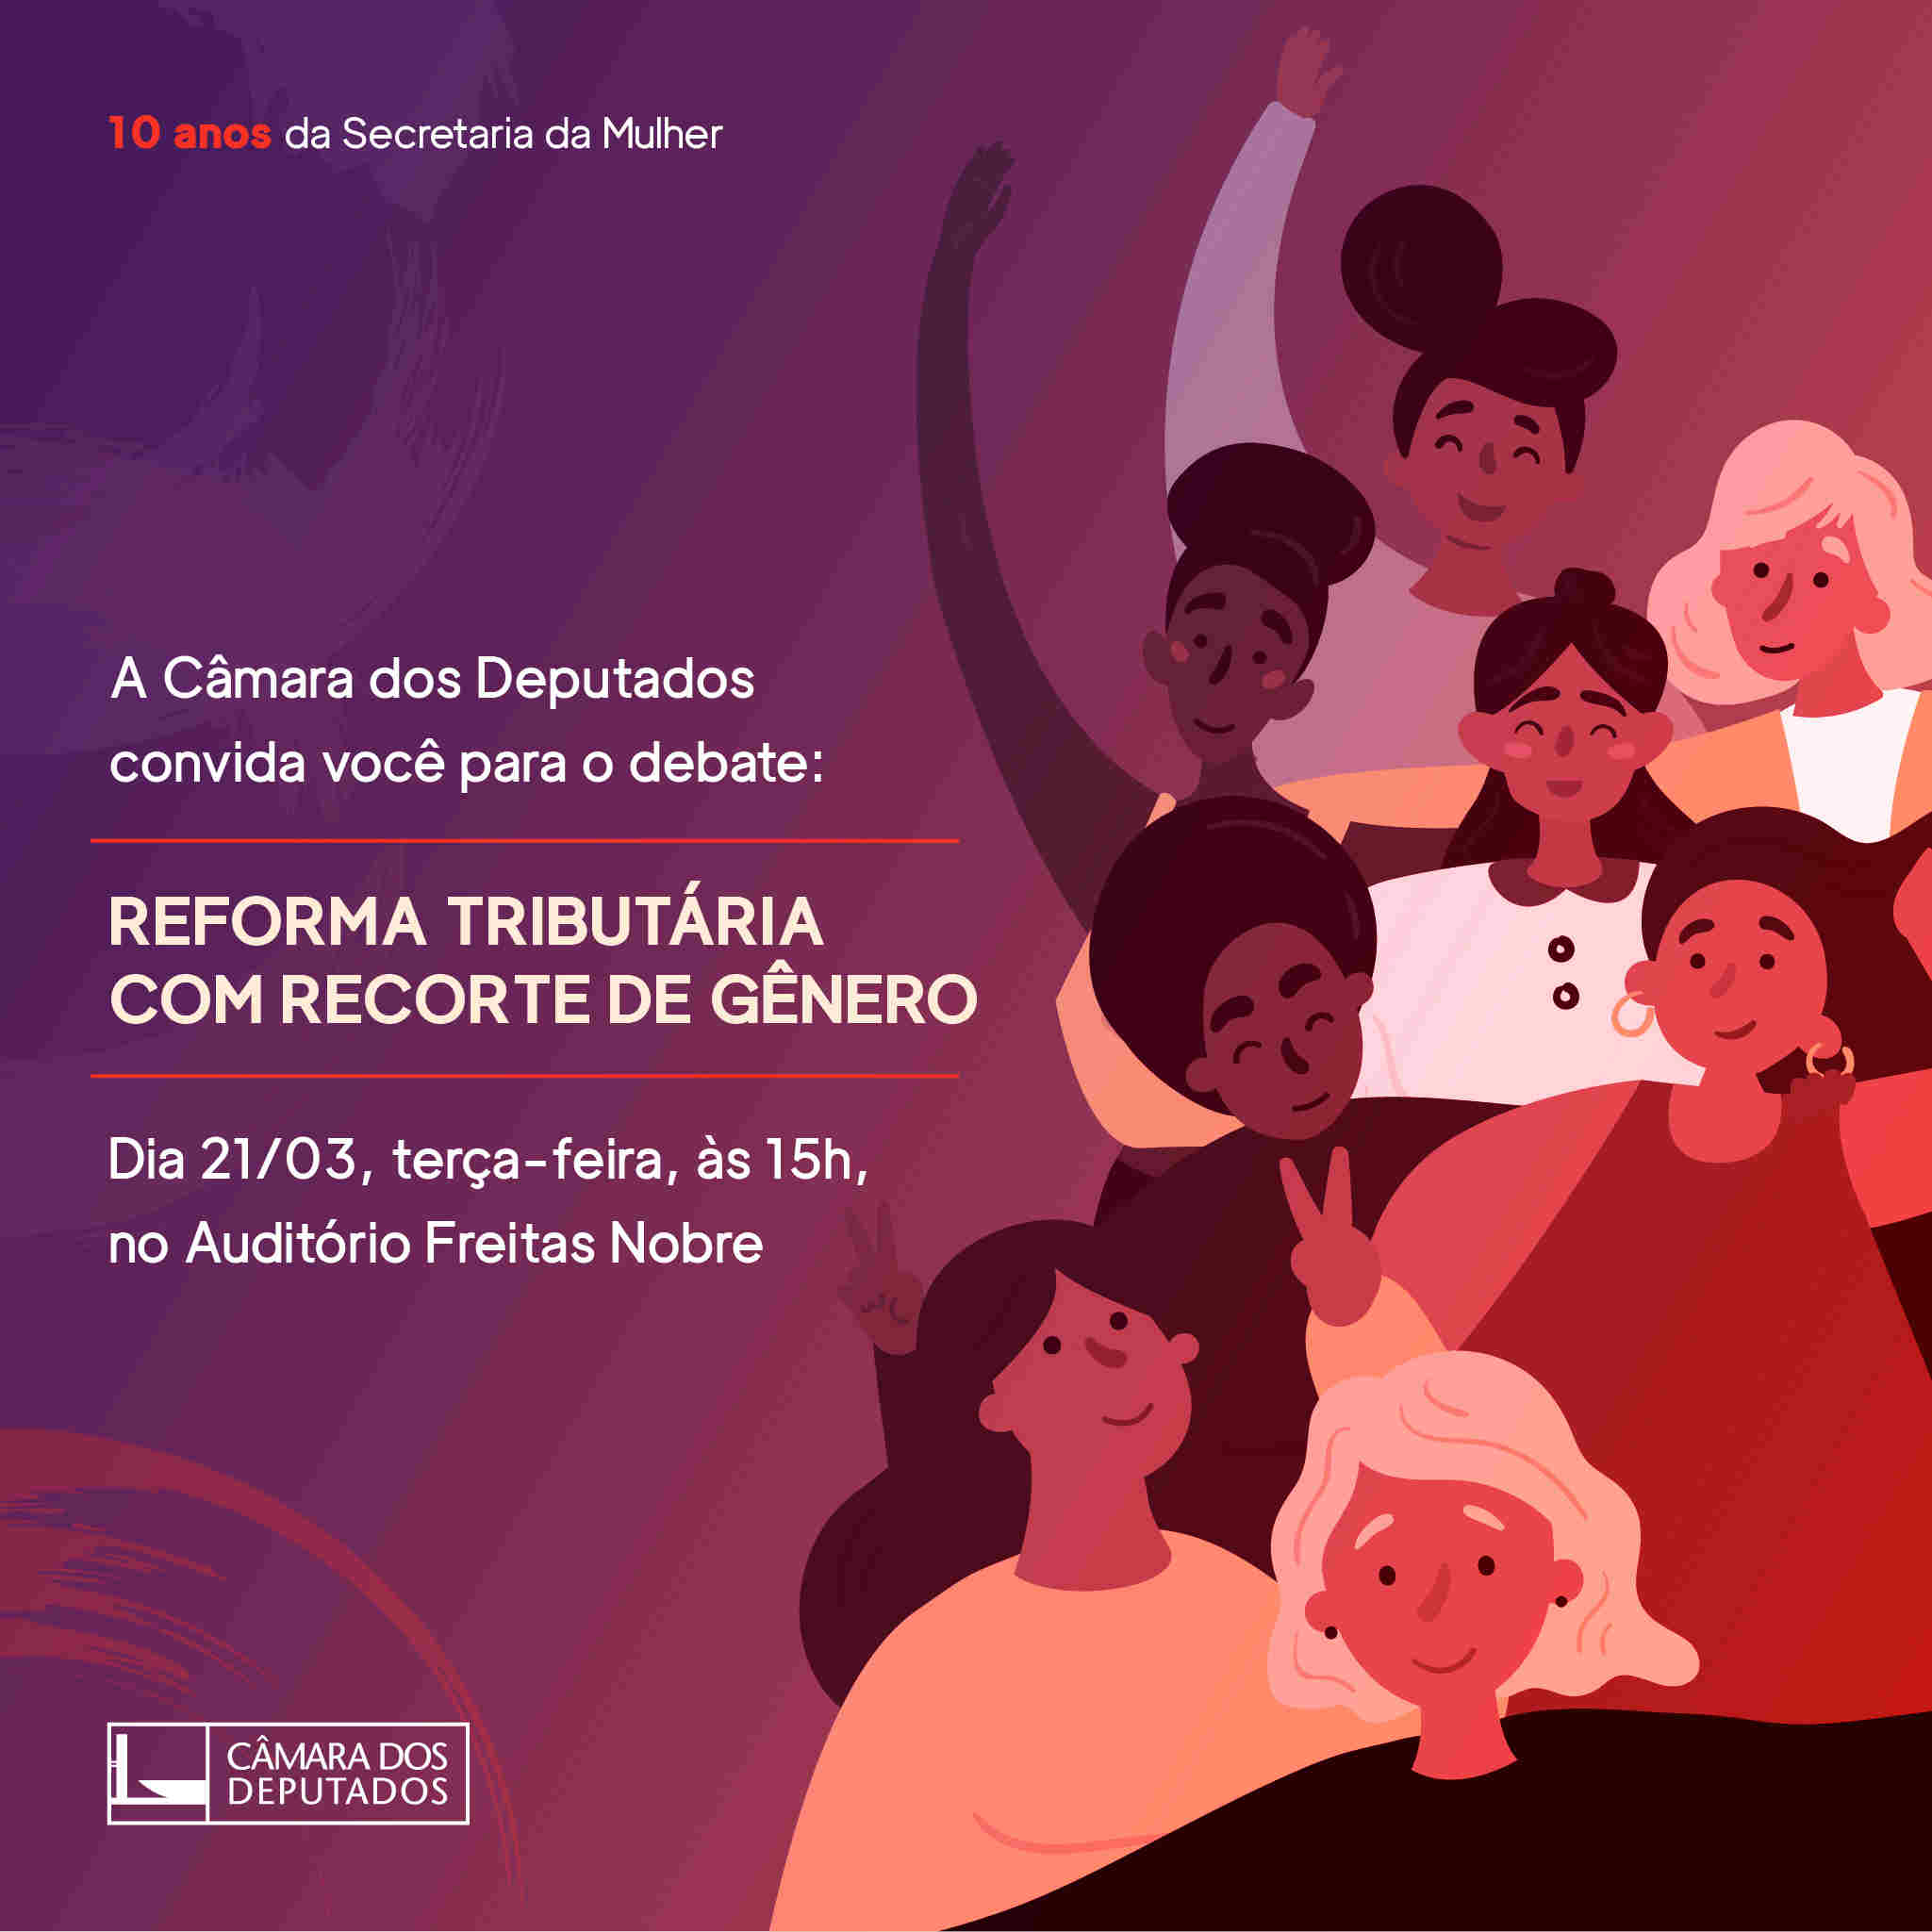 Câmara dos Deputados: Secretaria da Mulher promove debate sobre reforma tributária na perspectiva de gênero